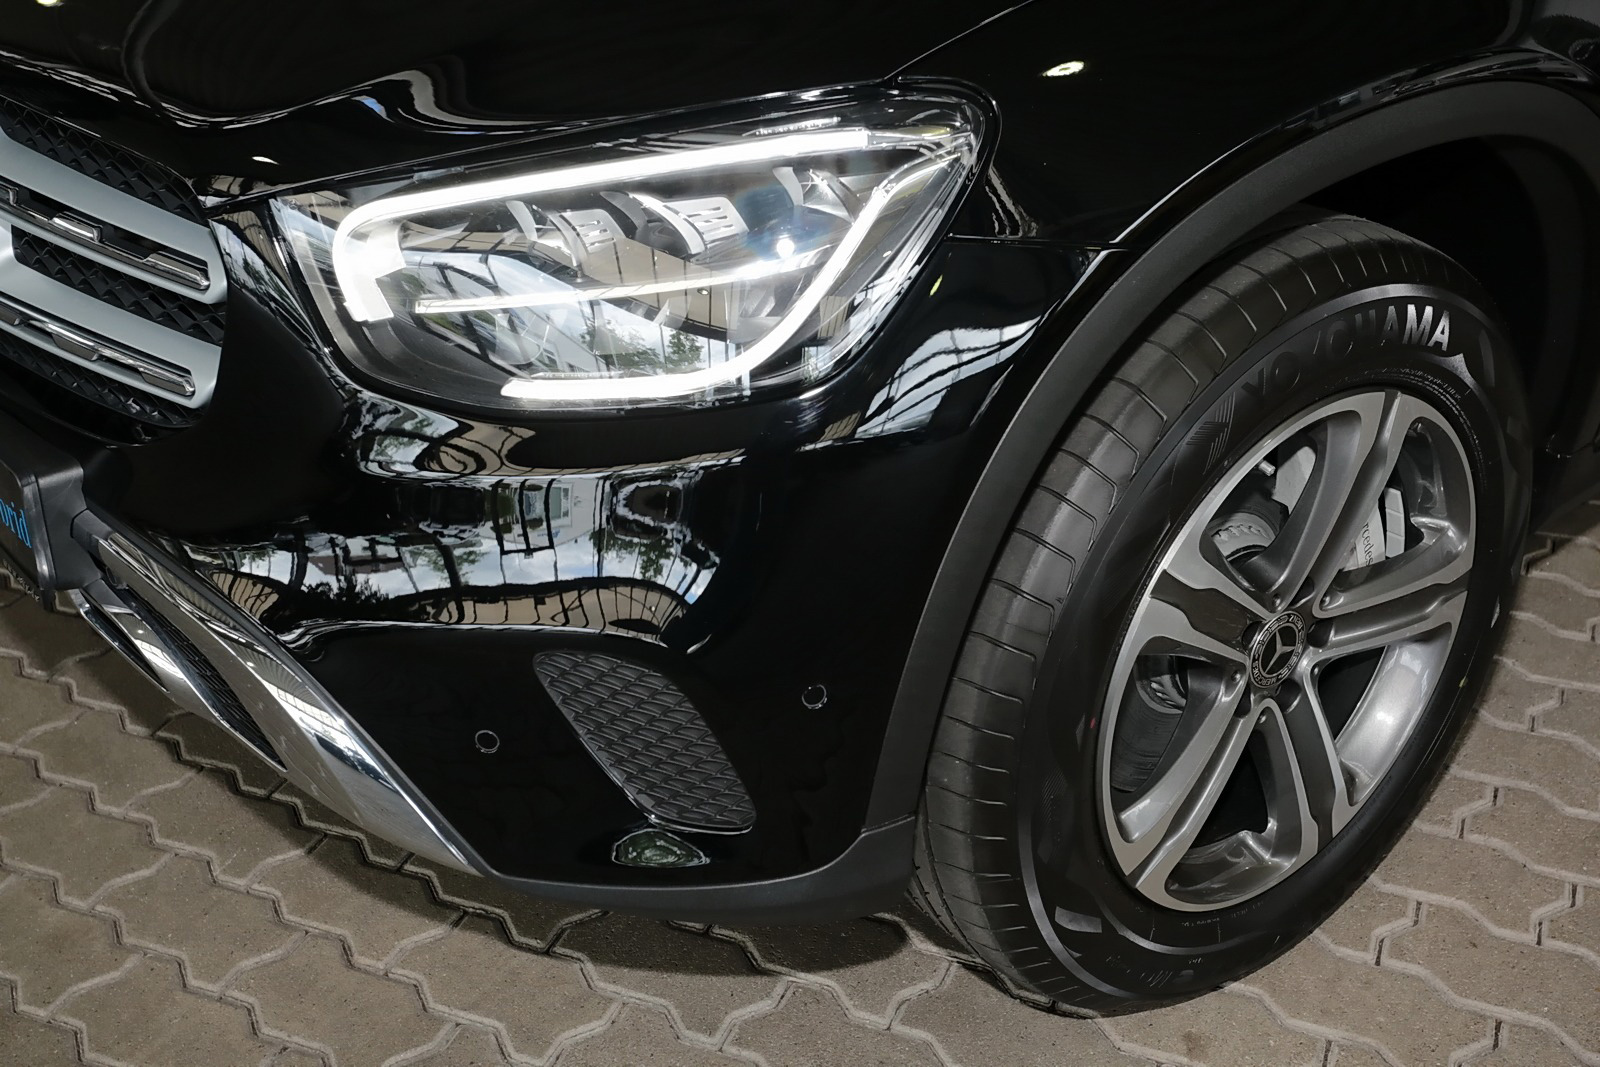 Mercedes-Benz GLC 300 e 4M AHK+MBUX+RüKam+LED+Tempo+Keyless 